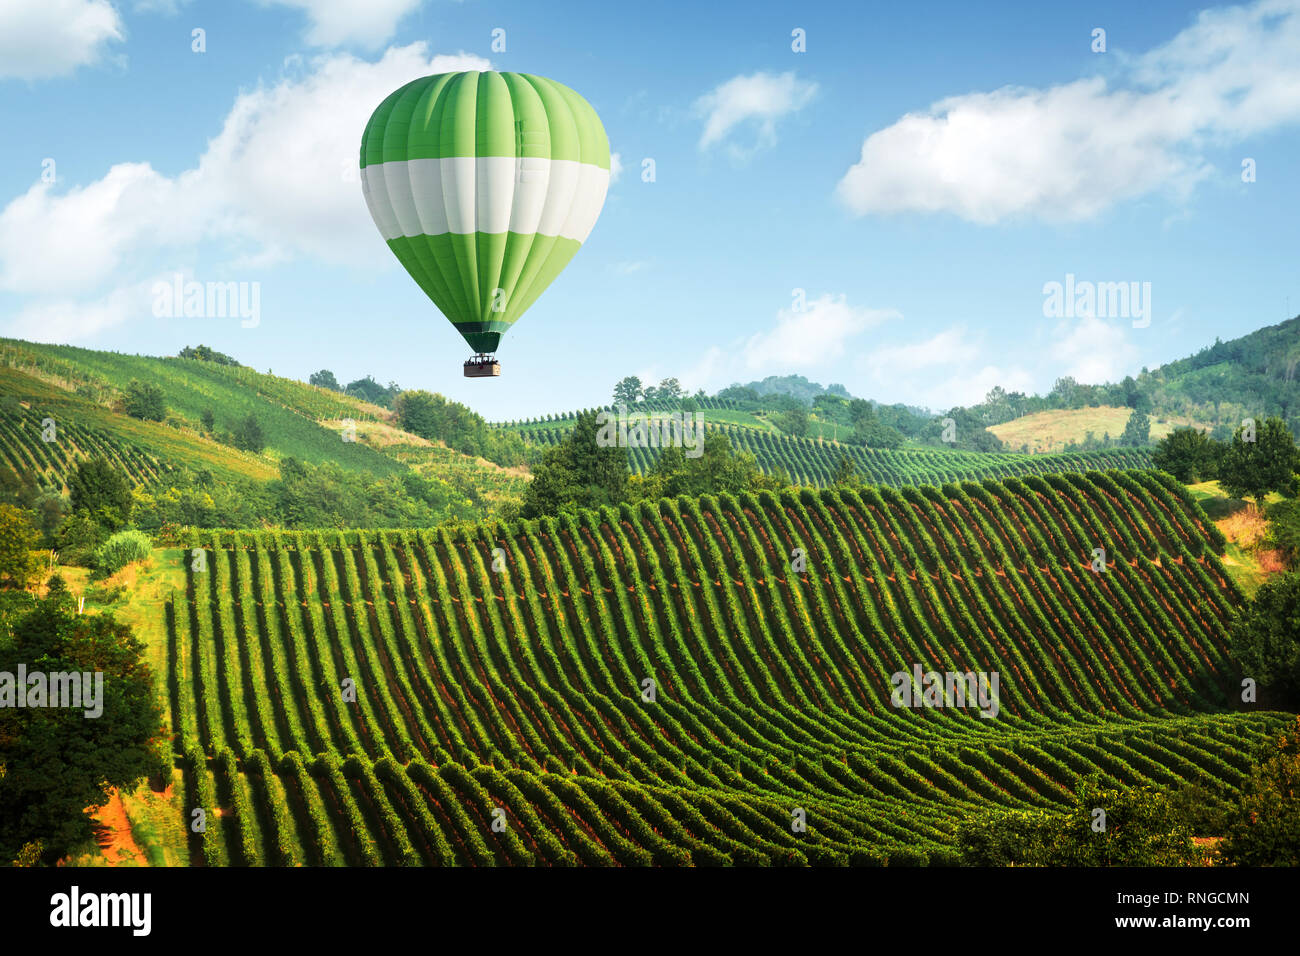 Amazing paysage rural avec ballon vert en vertu de vignoble sur les collines de l'Italie. Arrière-plan de vigne Banque D'Images